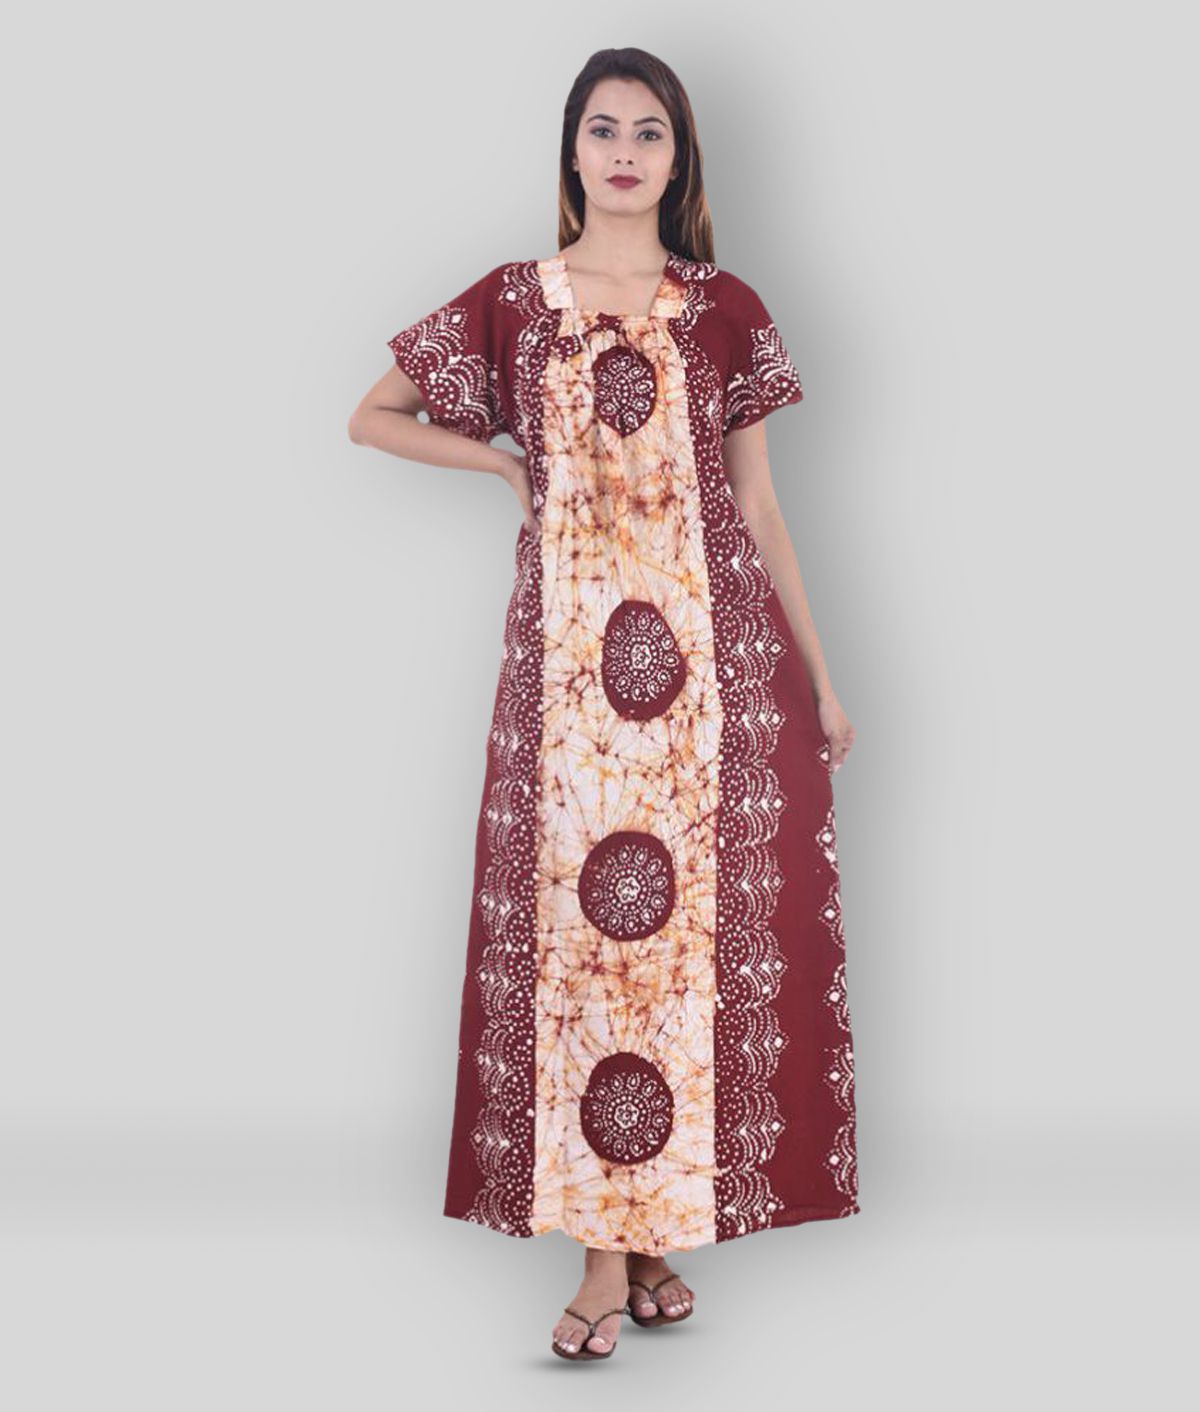     			Apratim - Multicolor Cotton Women's Nightwear Nighty & Night Gowns ( Pack of 1 )